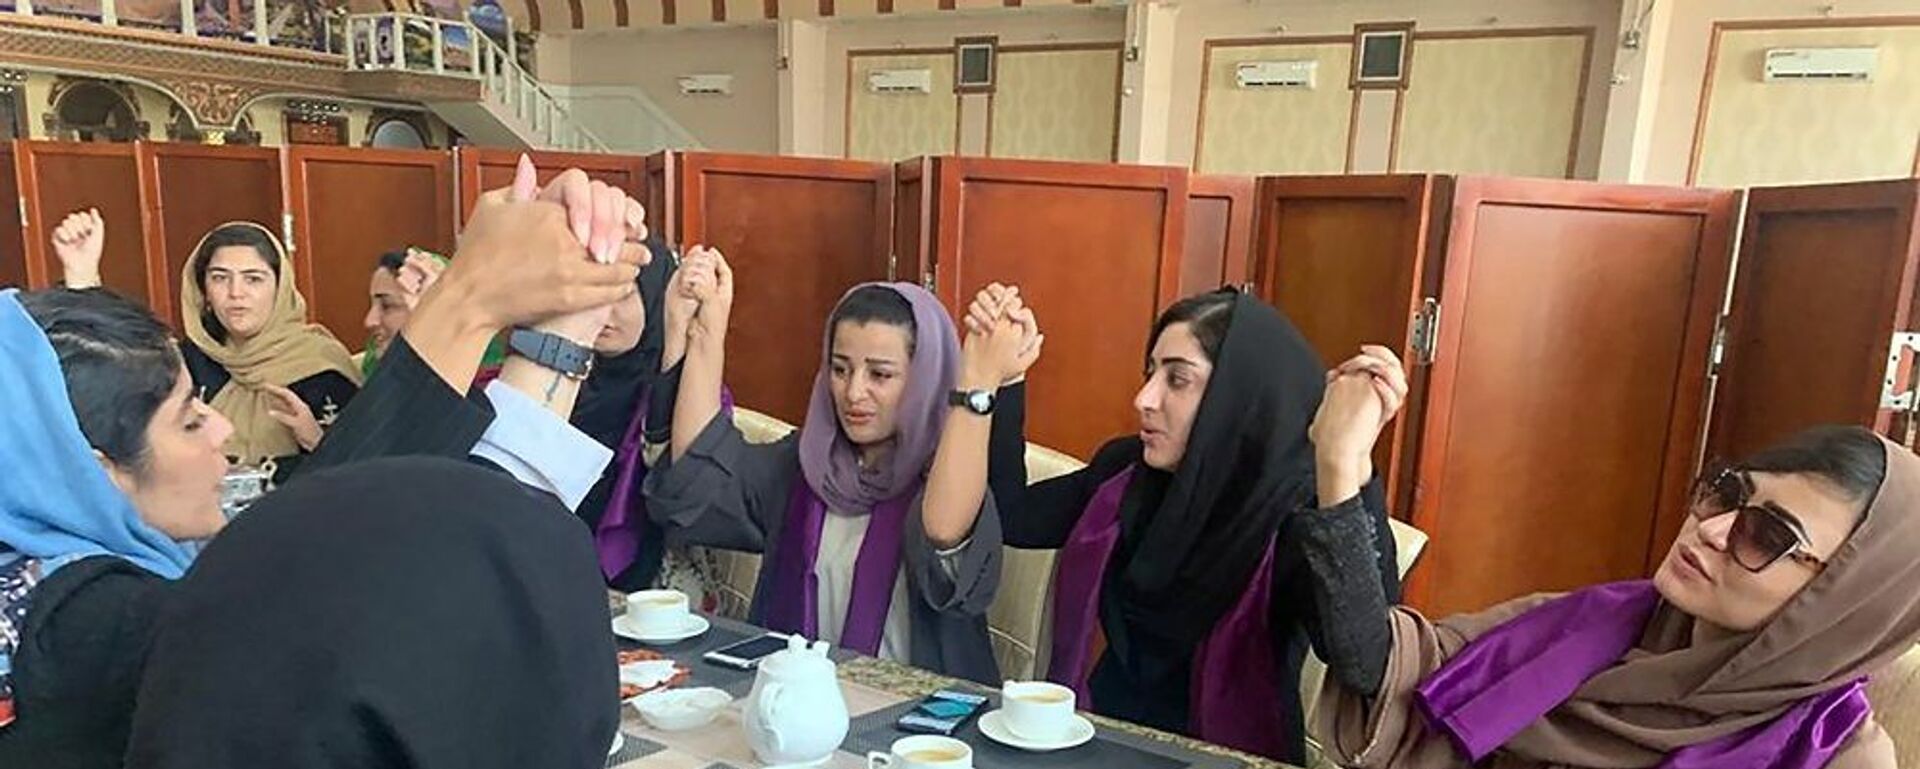 نساء أفغانيات يطالبن بحقوقهن في ظل حكم حركة طالبان بعد السيطرة على كابول، أفغانستان، 4 سبتمبر/ أيلول 2021 - سبوتنيك عربي, 1920, 17.10.2021